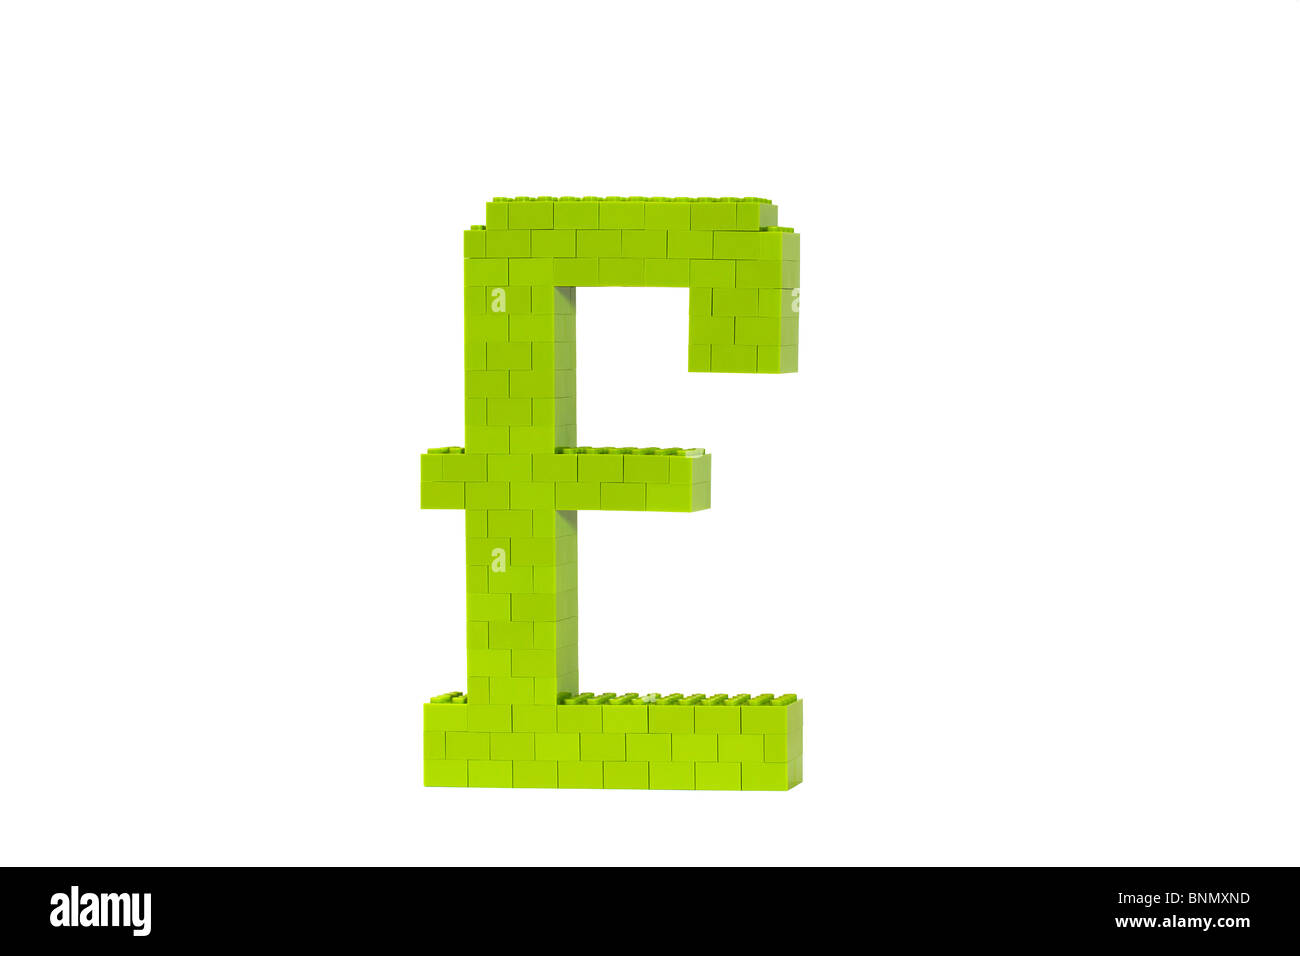 Ein grünes Symbol Pfund (GBP) aus Spielzeug Ziegel gebaut und erschossen vor einem weißen Hintergrund in einem Winkel zu zeigen, dass es 3D Natur ist. Stockfoto